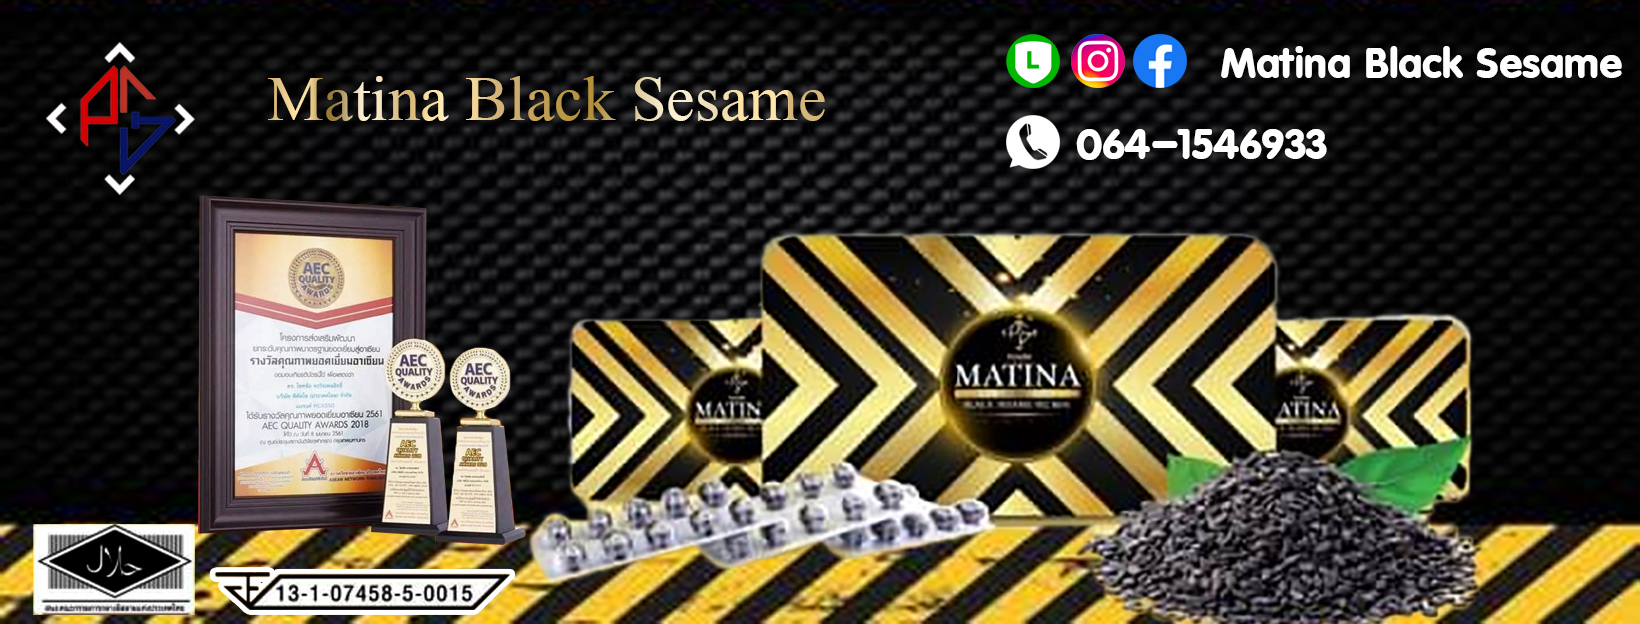 Matina Black Sesame มาทีน่า แบล็คเซซามิน น้ำมันงาดำสกัดเย็น 100%